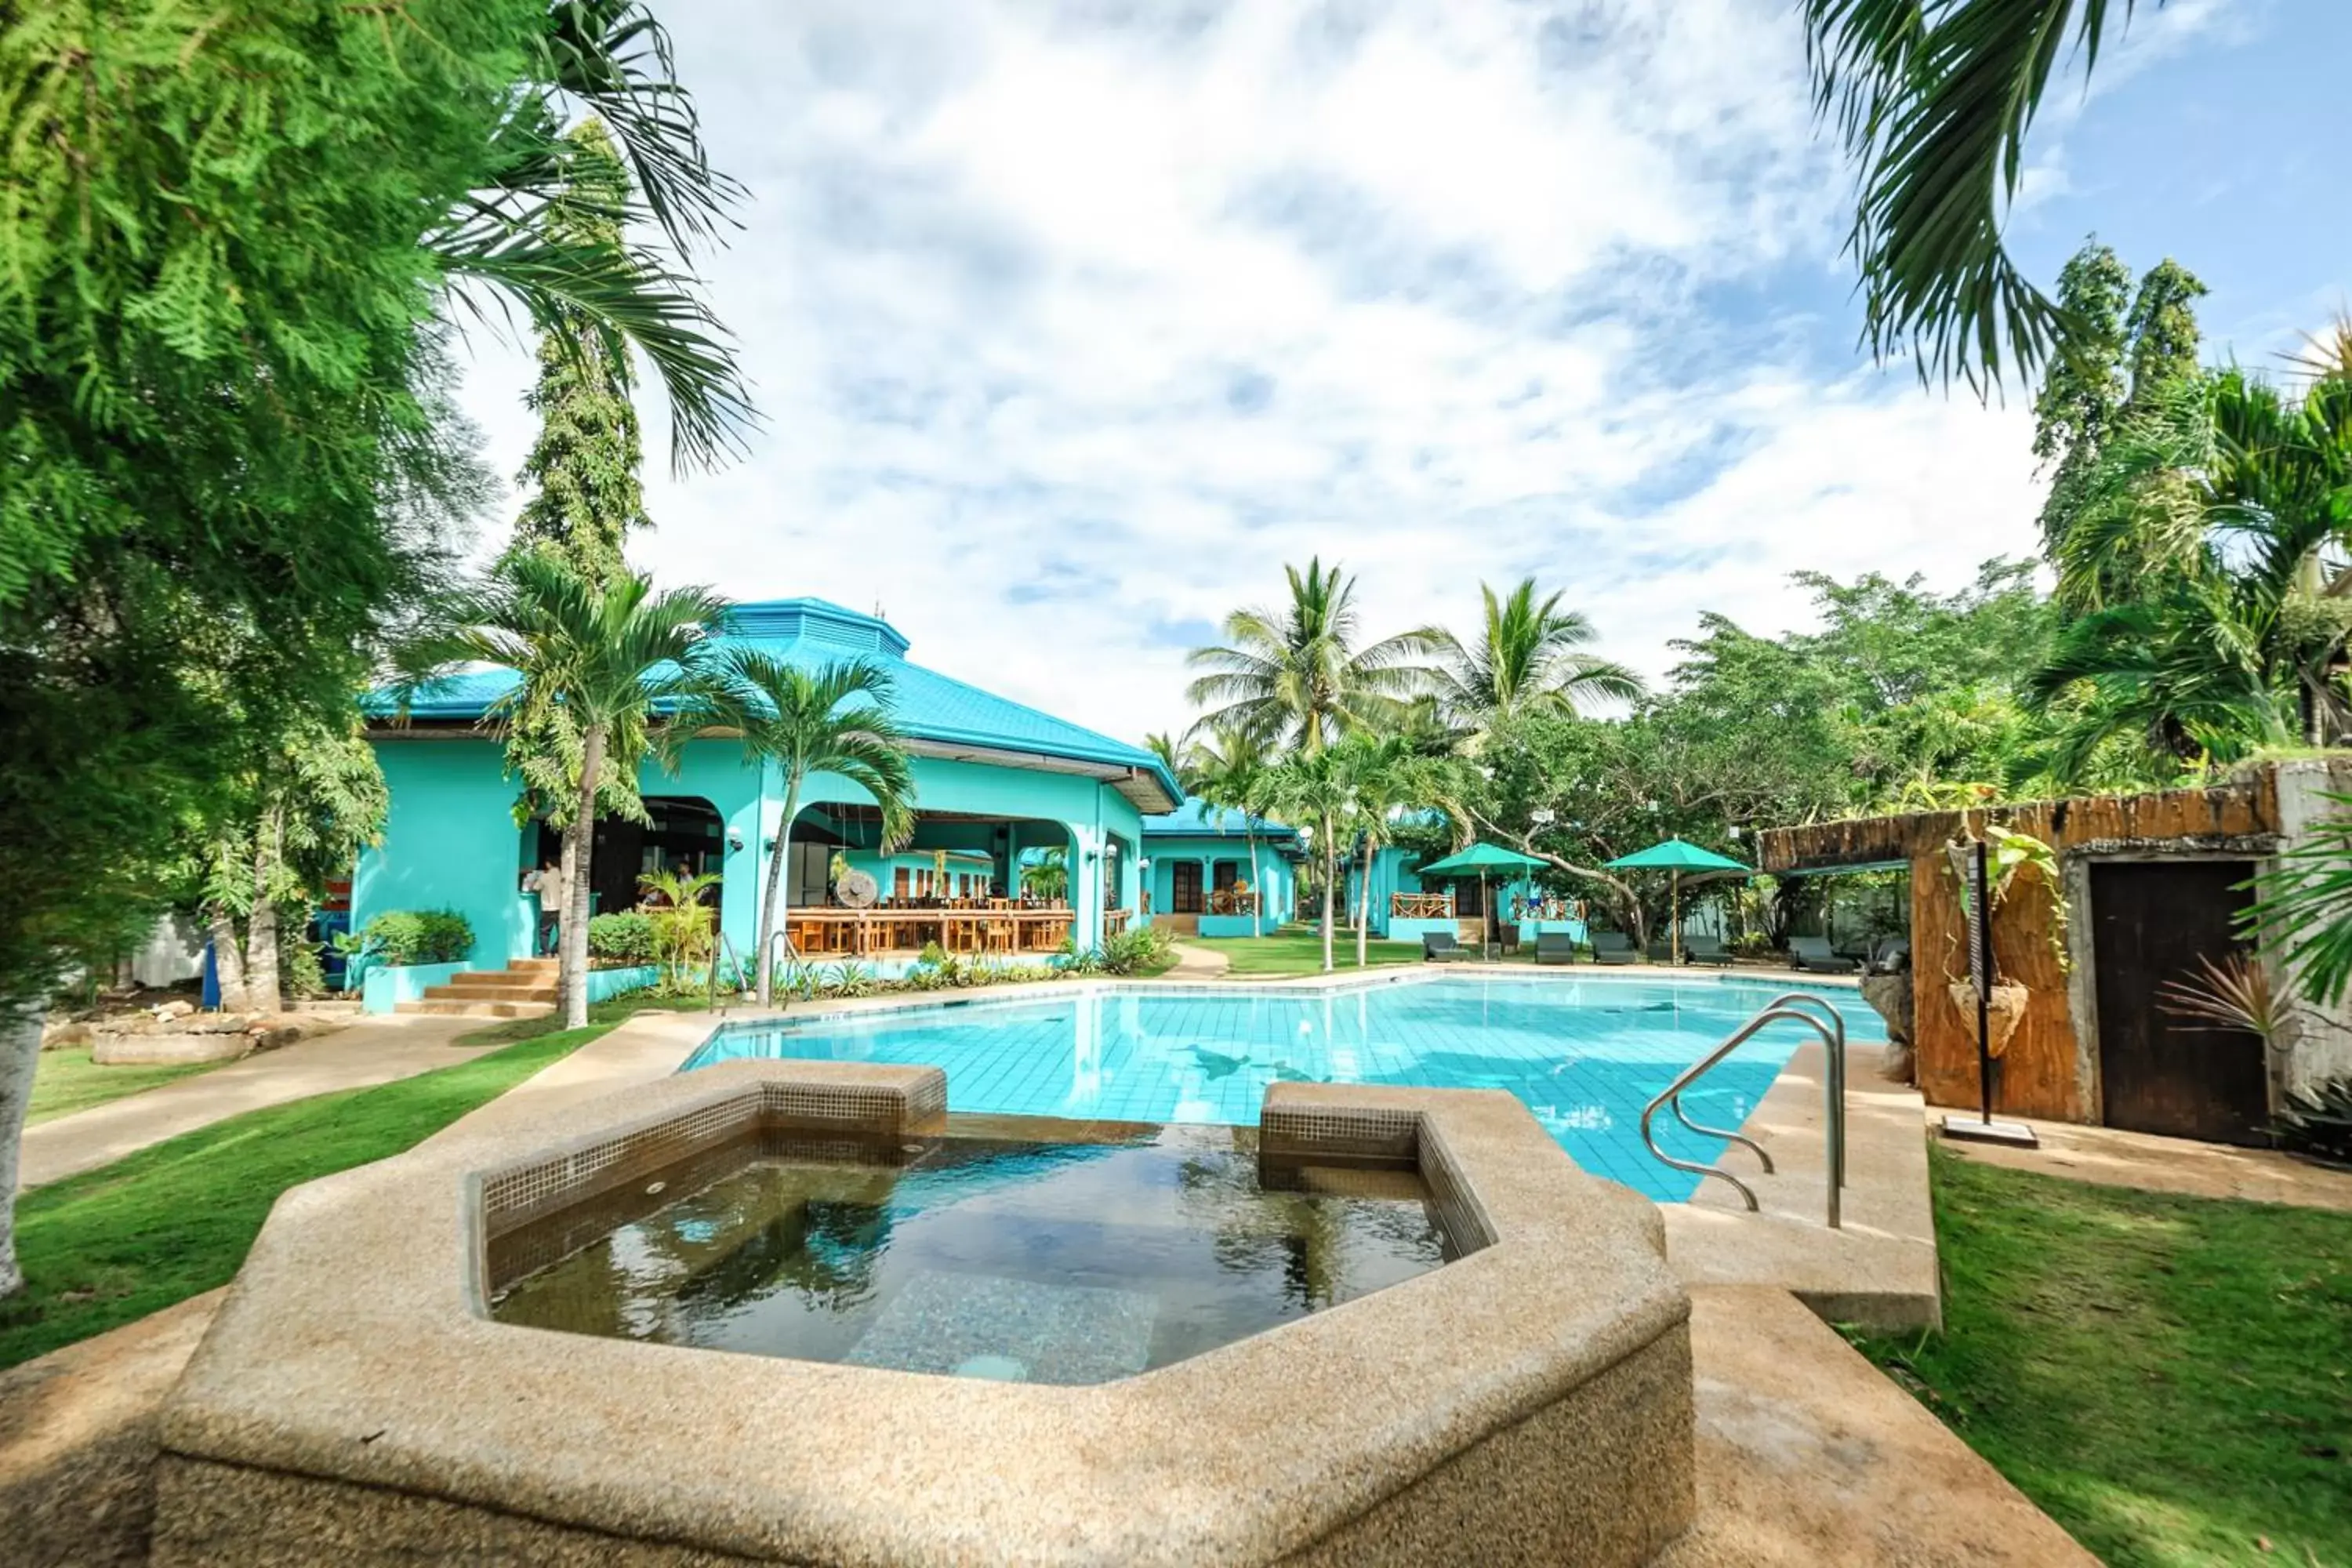 Property building, Swimming Pool in Bohol Sea Resort